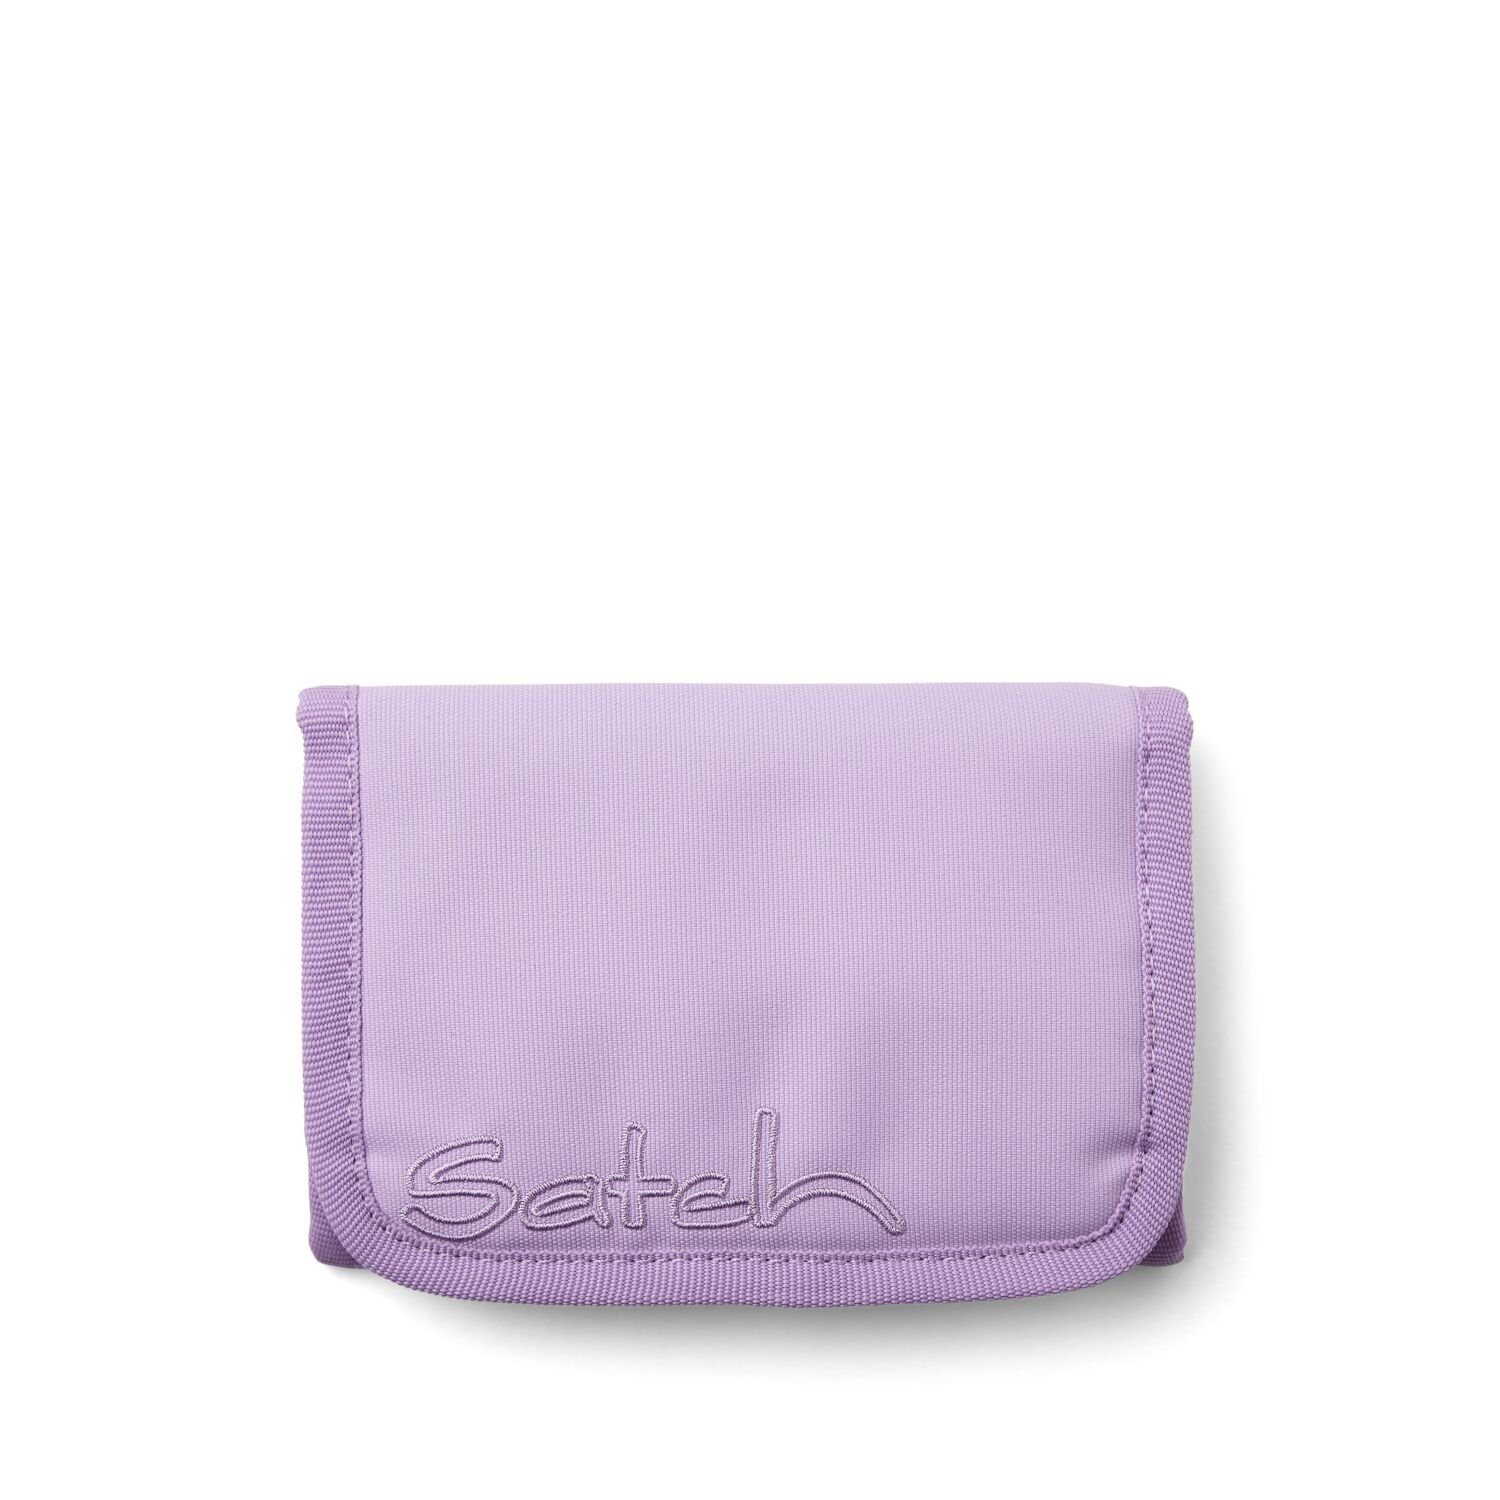 Satch Schulranzen Geldbeutel Nordic Purple (1 Stück), Geldbörse, Portemonnaie, Brieftasche